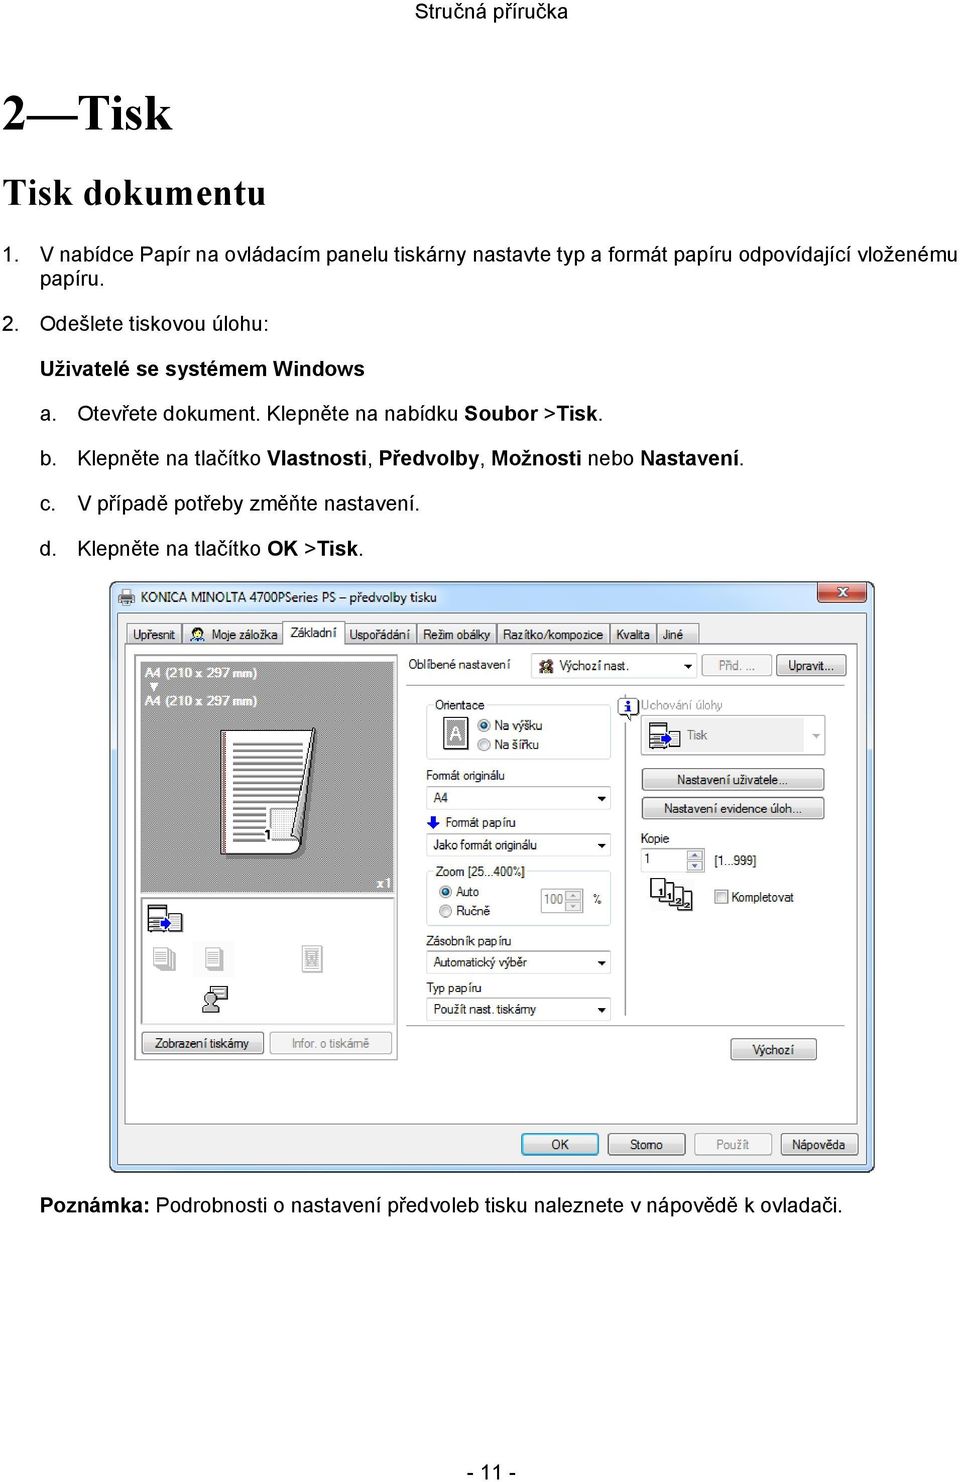 Odešlete tiskovou úlohu: Uživatelé se systémem Windows a. Otevřete dokument. Klepněte na nabídku Soubor >Tisk. b.